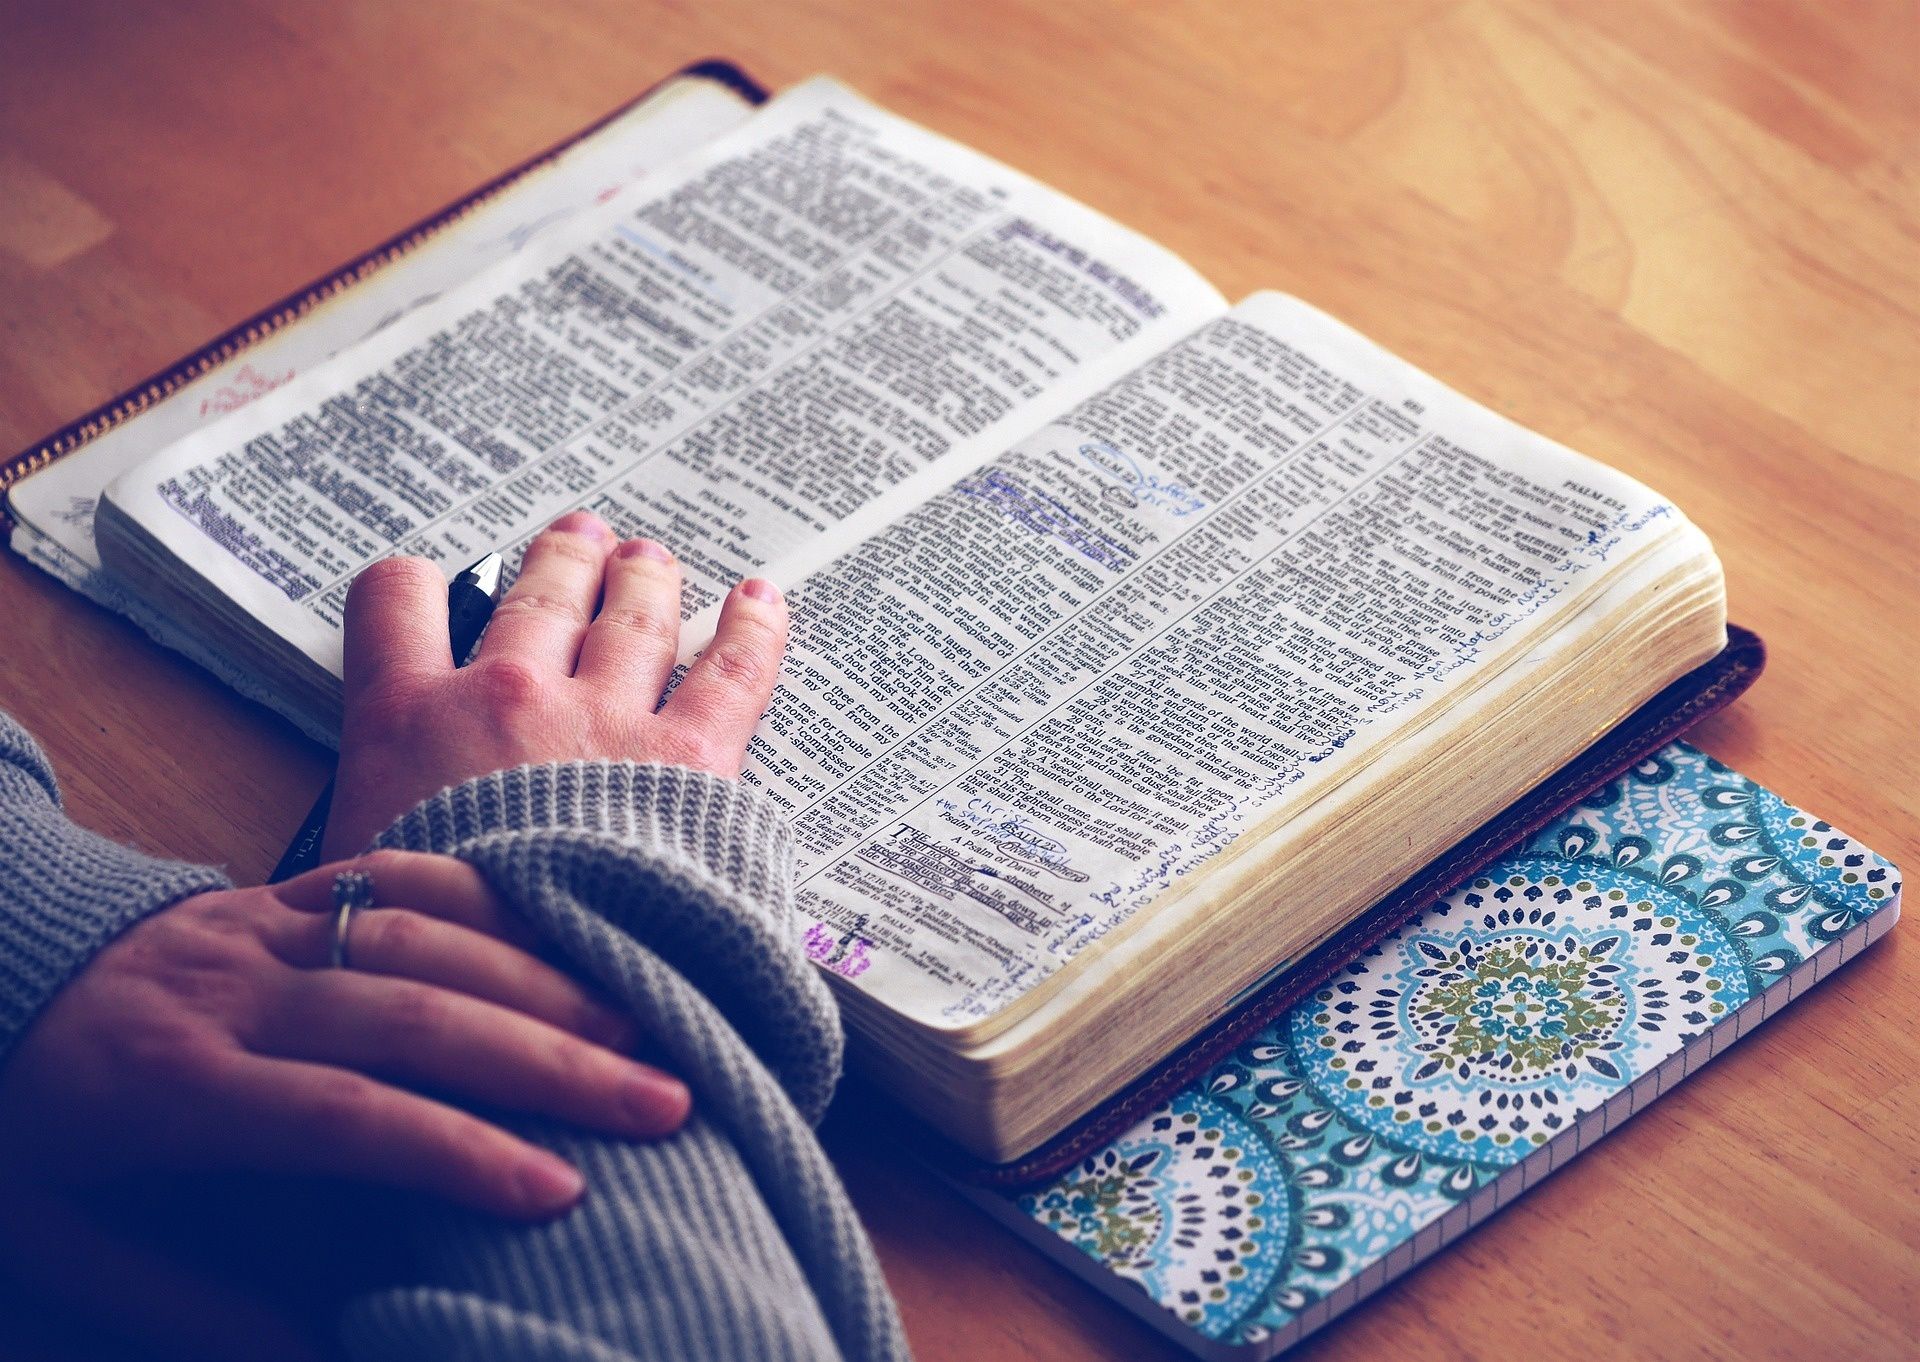 5 Bible Verses I Enjoy as a Non-Christian